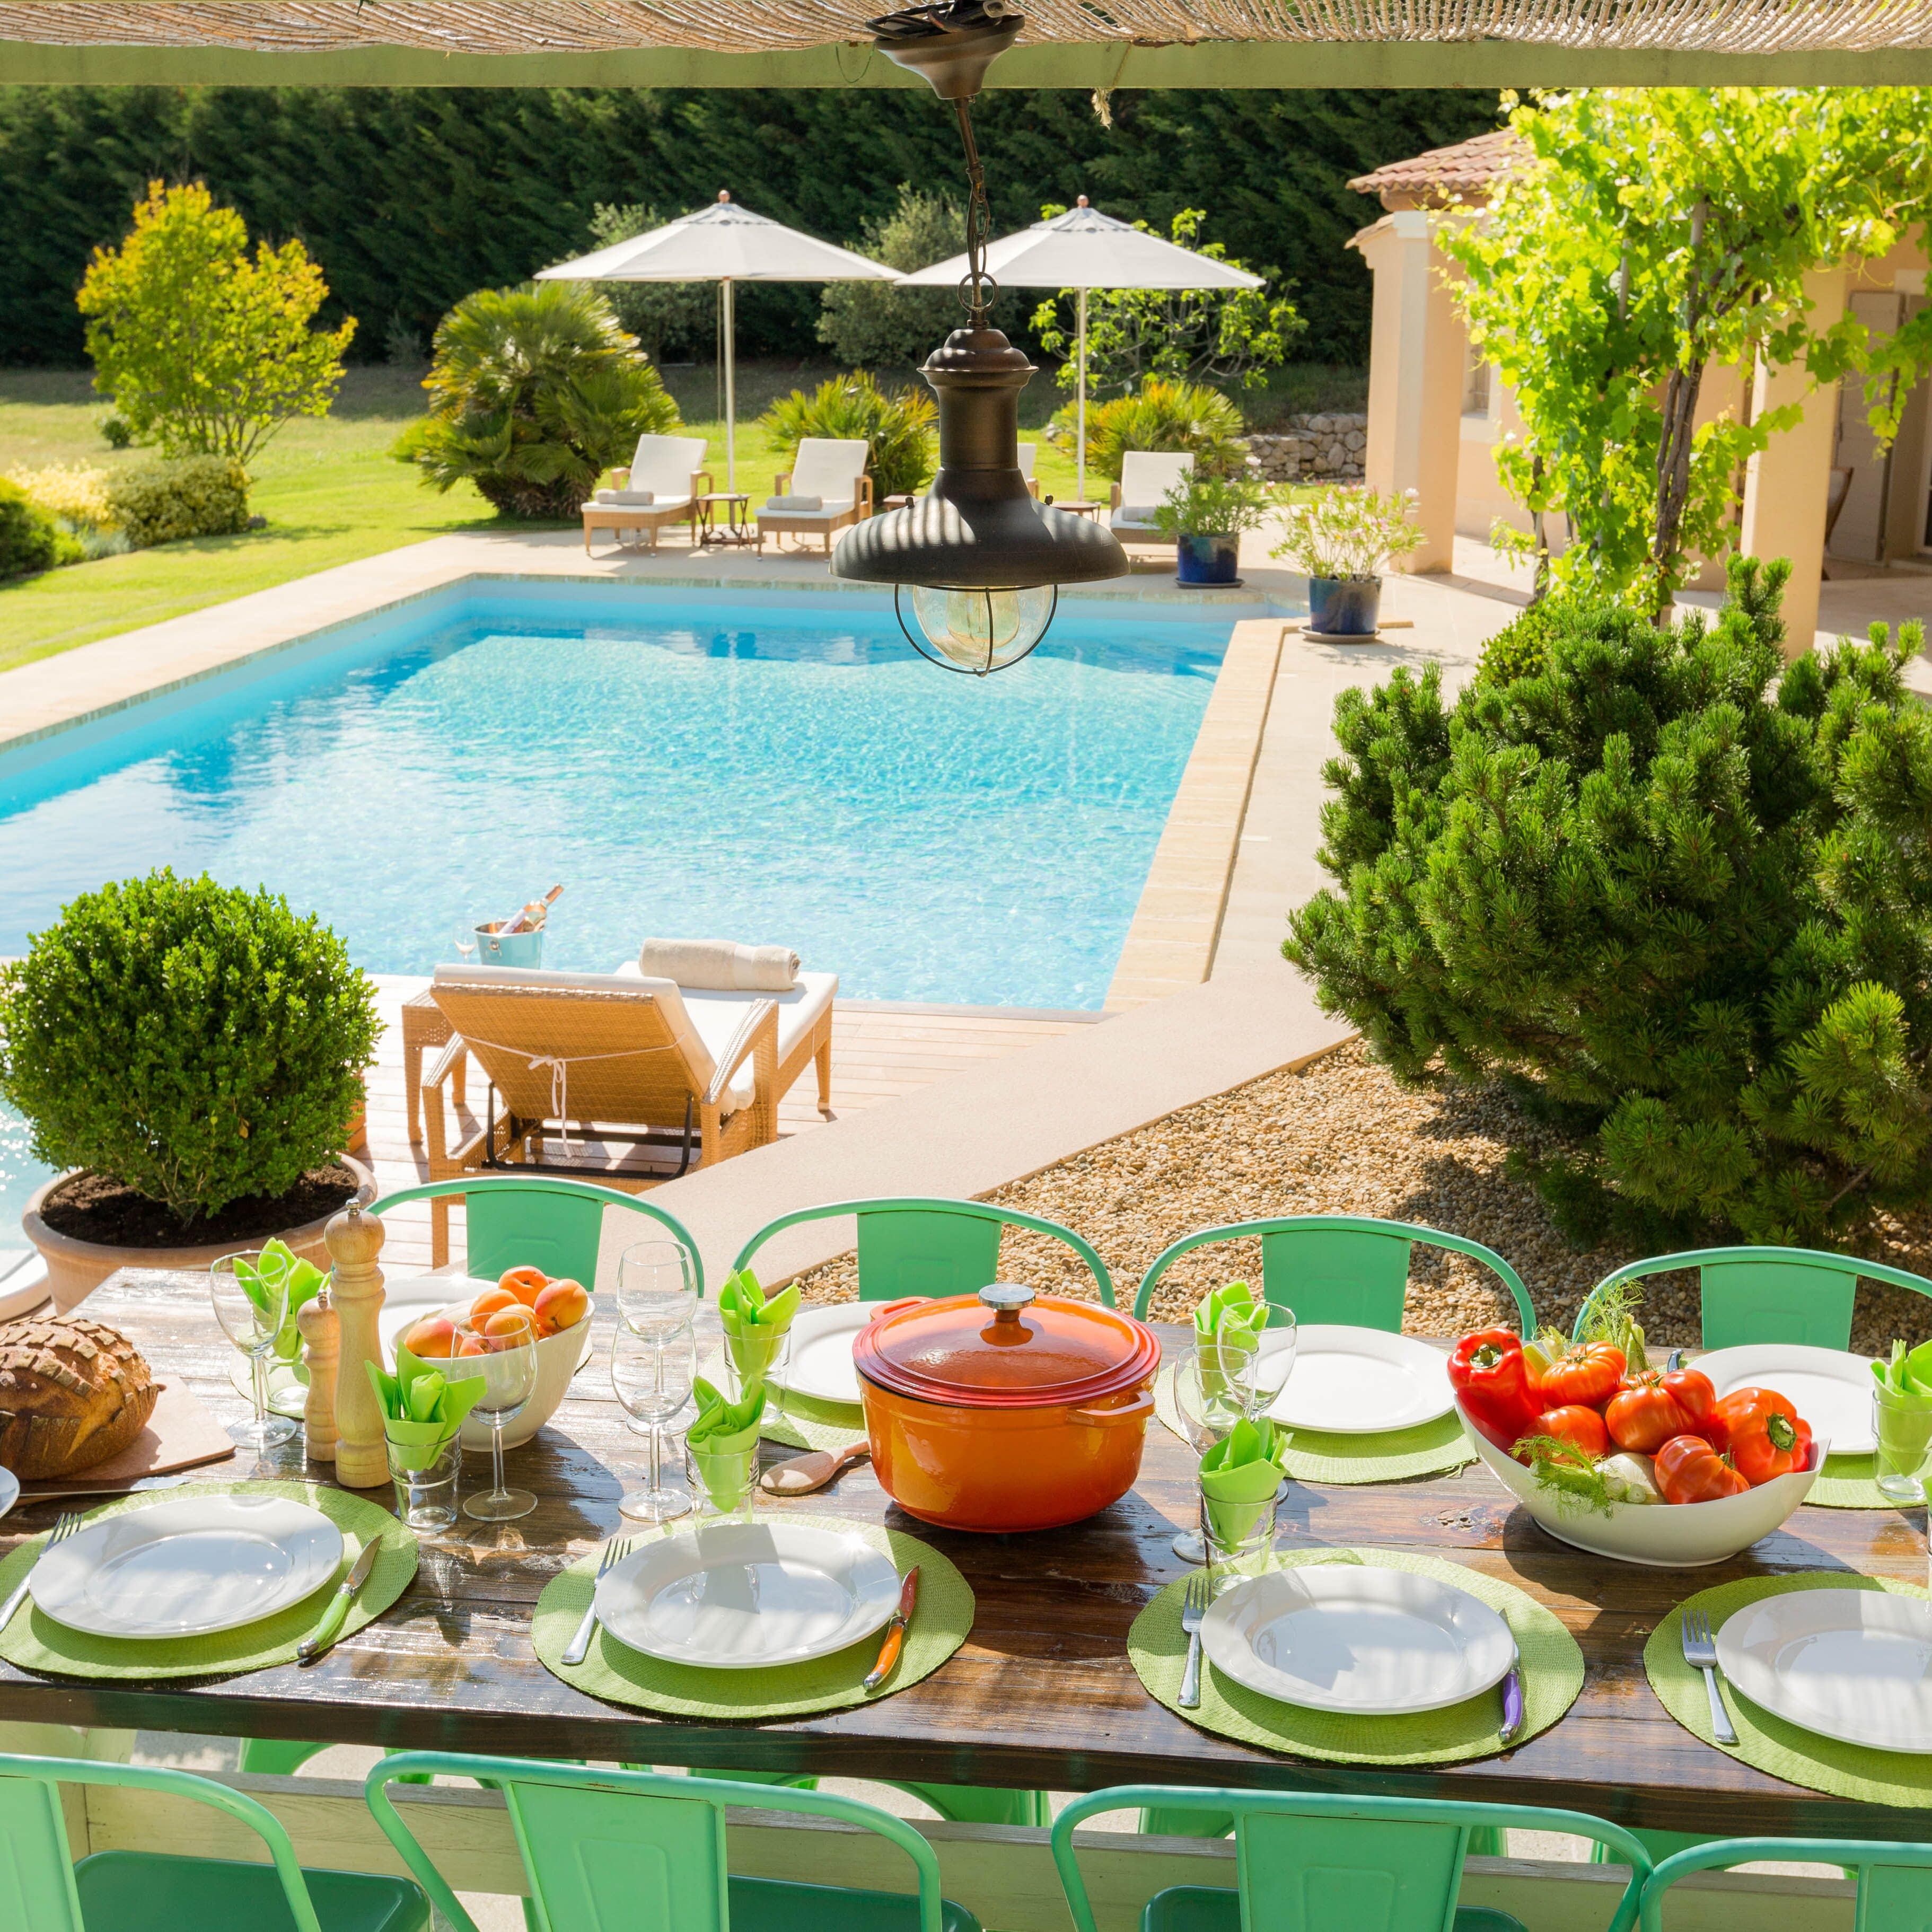 Hell gestrichenes Ferienhaus in der Provence mit großem Garten und Pool, neben dem im Schatten ein gedeckter Tisch wartet 